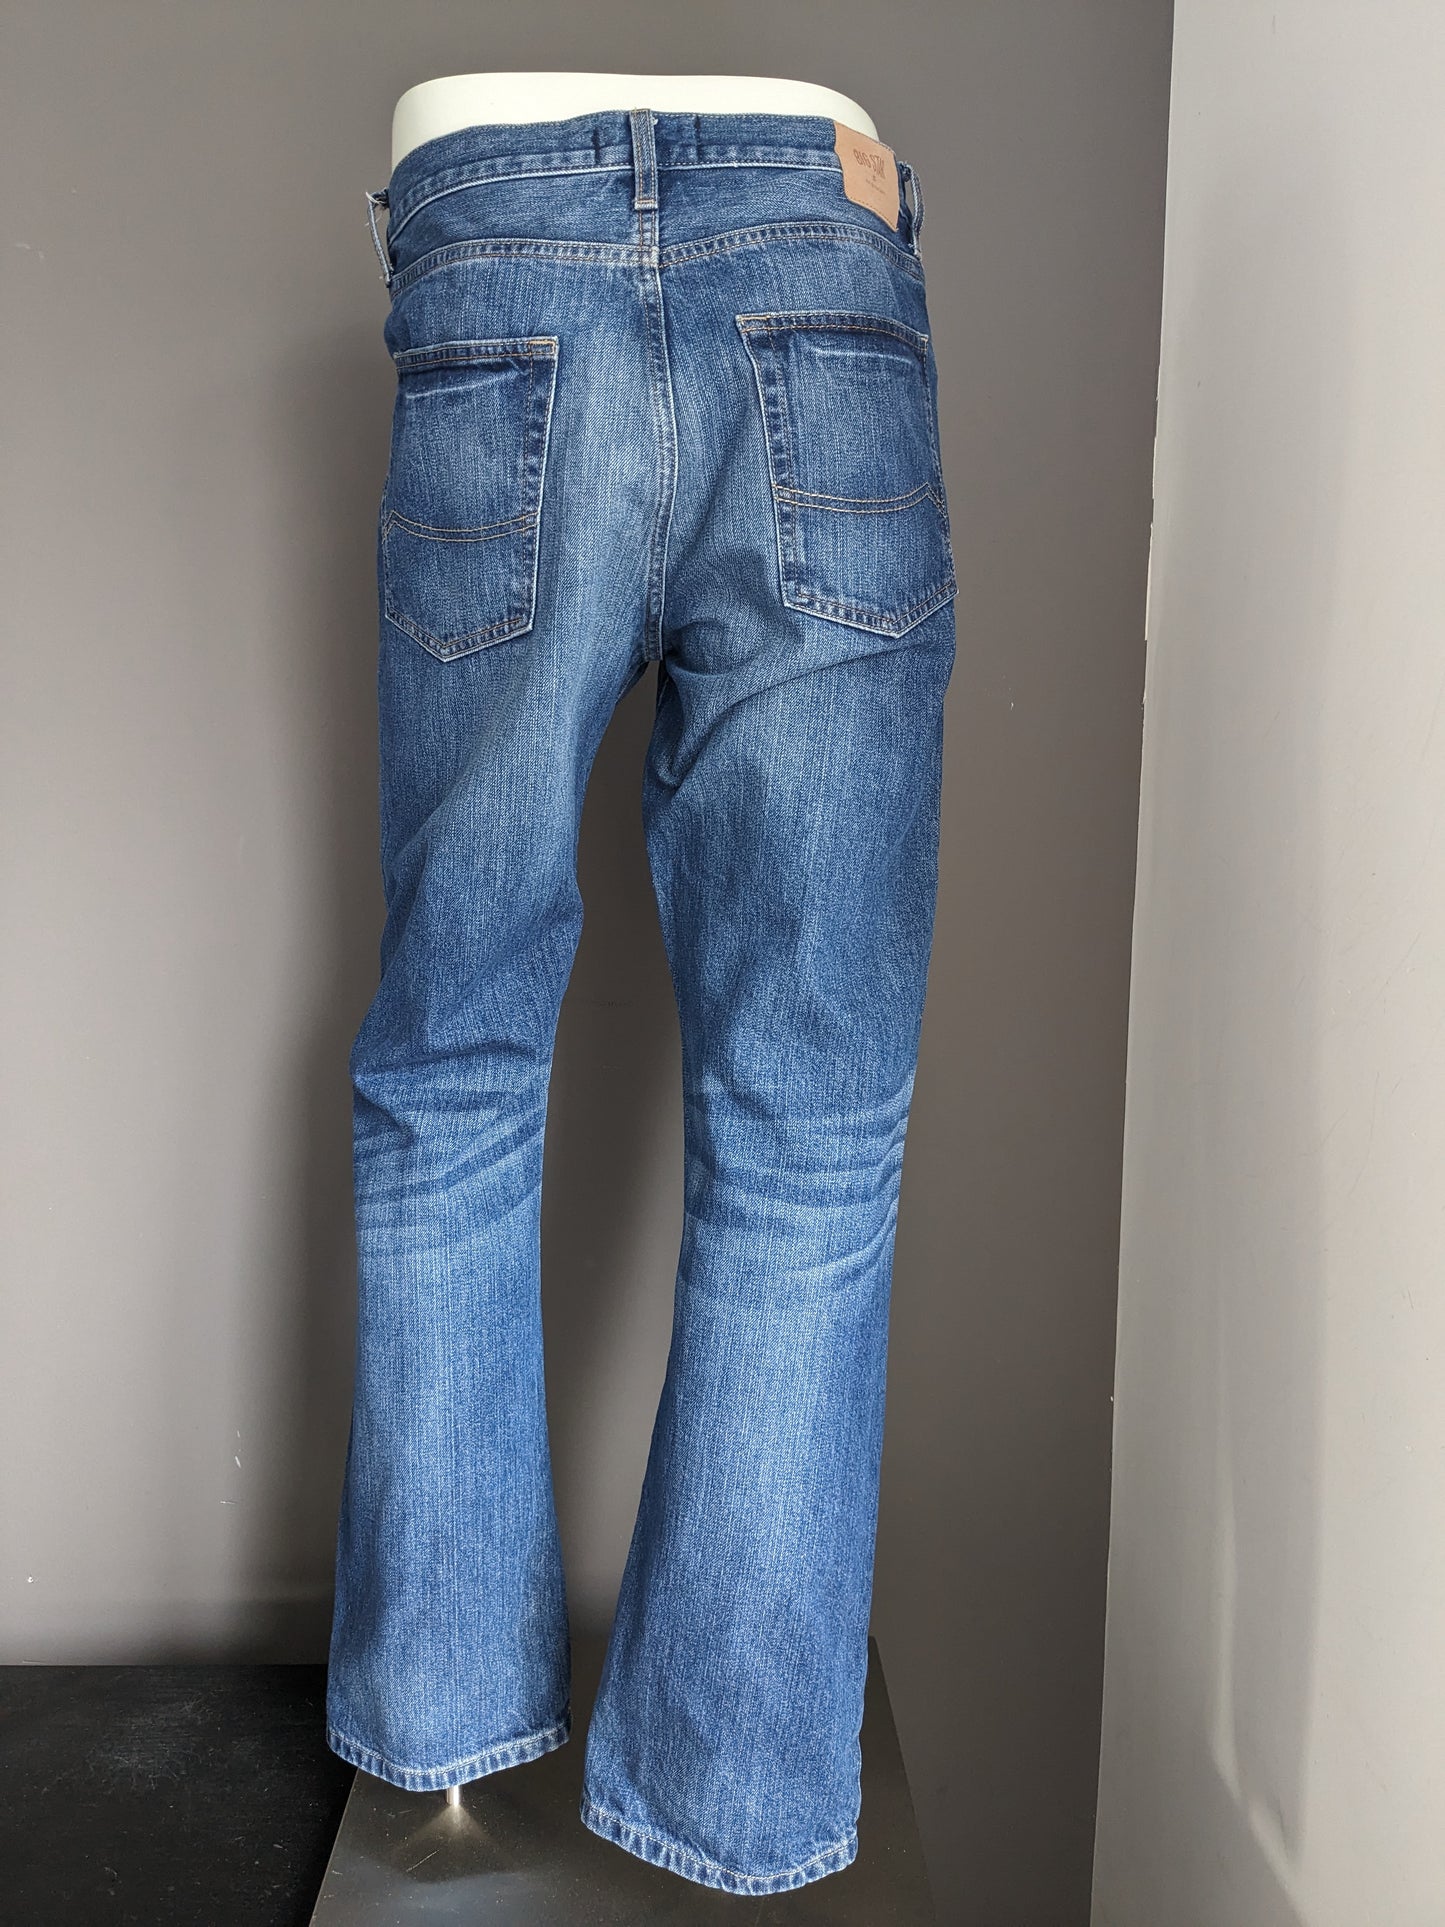 Big Star Jeans. Colorato blu. Digita Rogar. Adattamento regolare. Taglia W36 - L32.